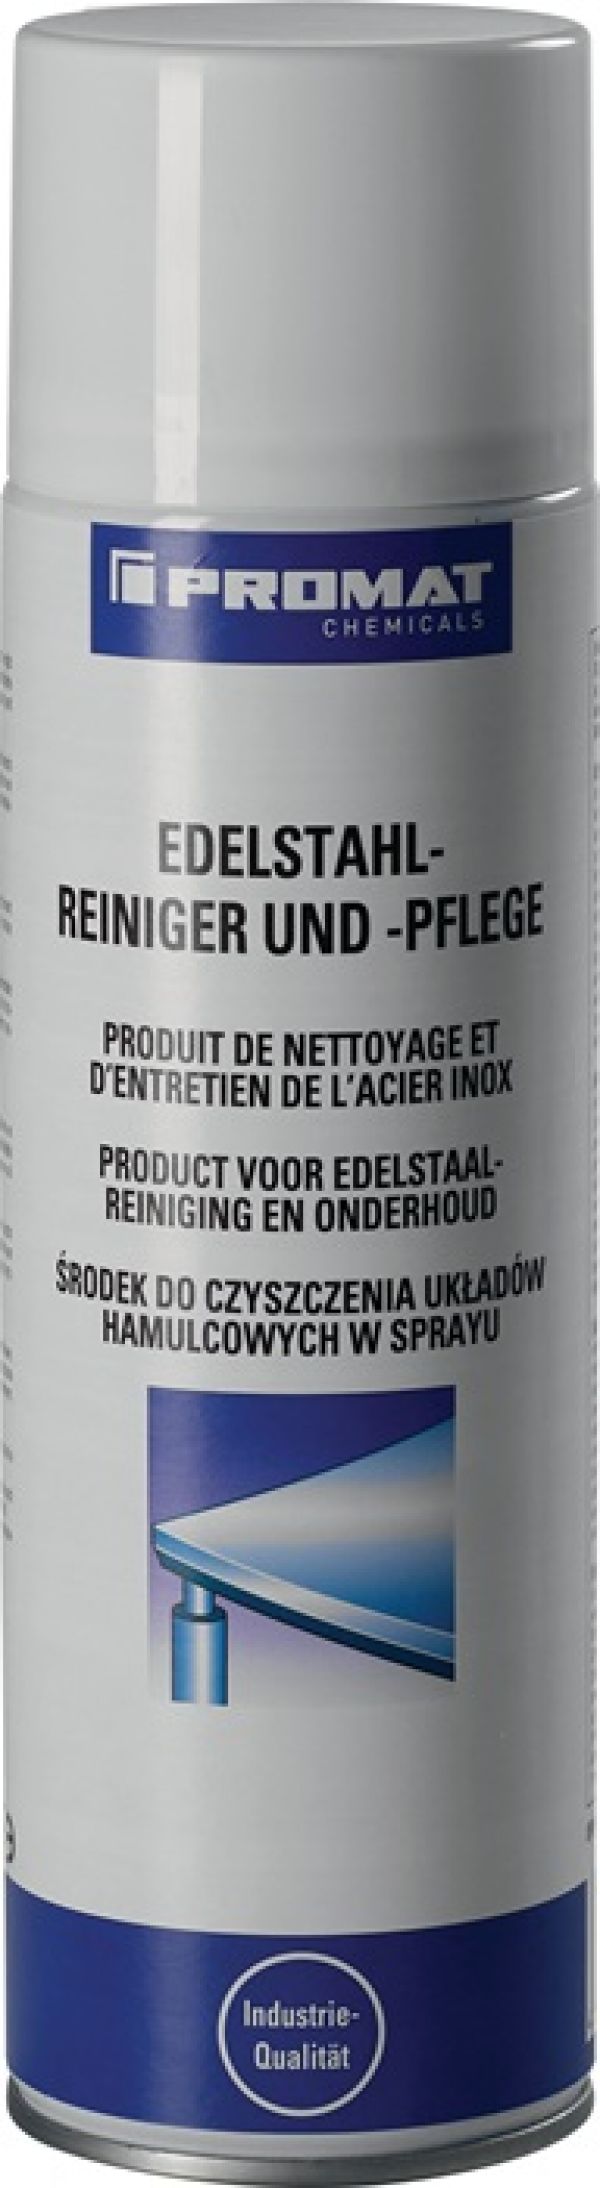 Edelstahlreiniger 500 ml Spraydose PROMAT CHEMICALS